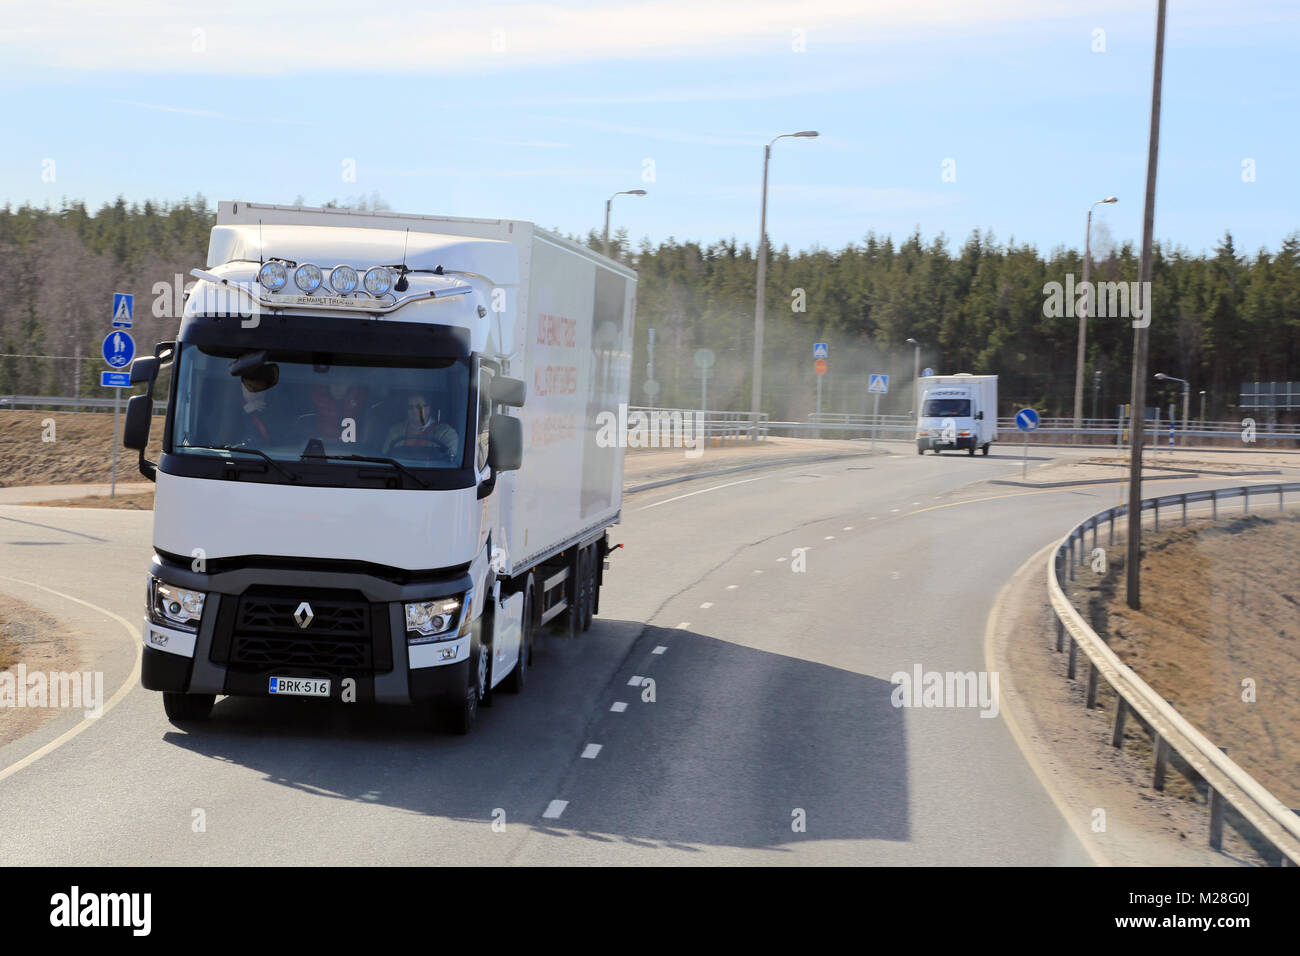 LIETO, FINNLAND - April 5, 2014: Neue Renault T Lkw auf eine Probefahrt. Renault Trucks präsentiert ihre neue Reihe T für Langstrecken bei Volvo Trucks und Stockfoto